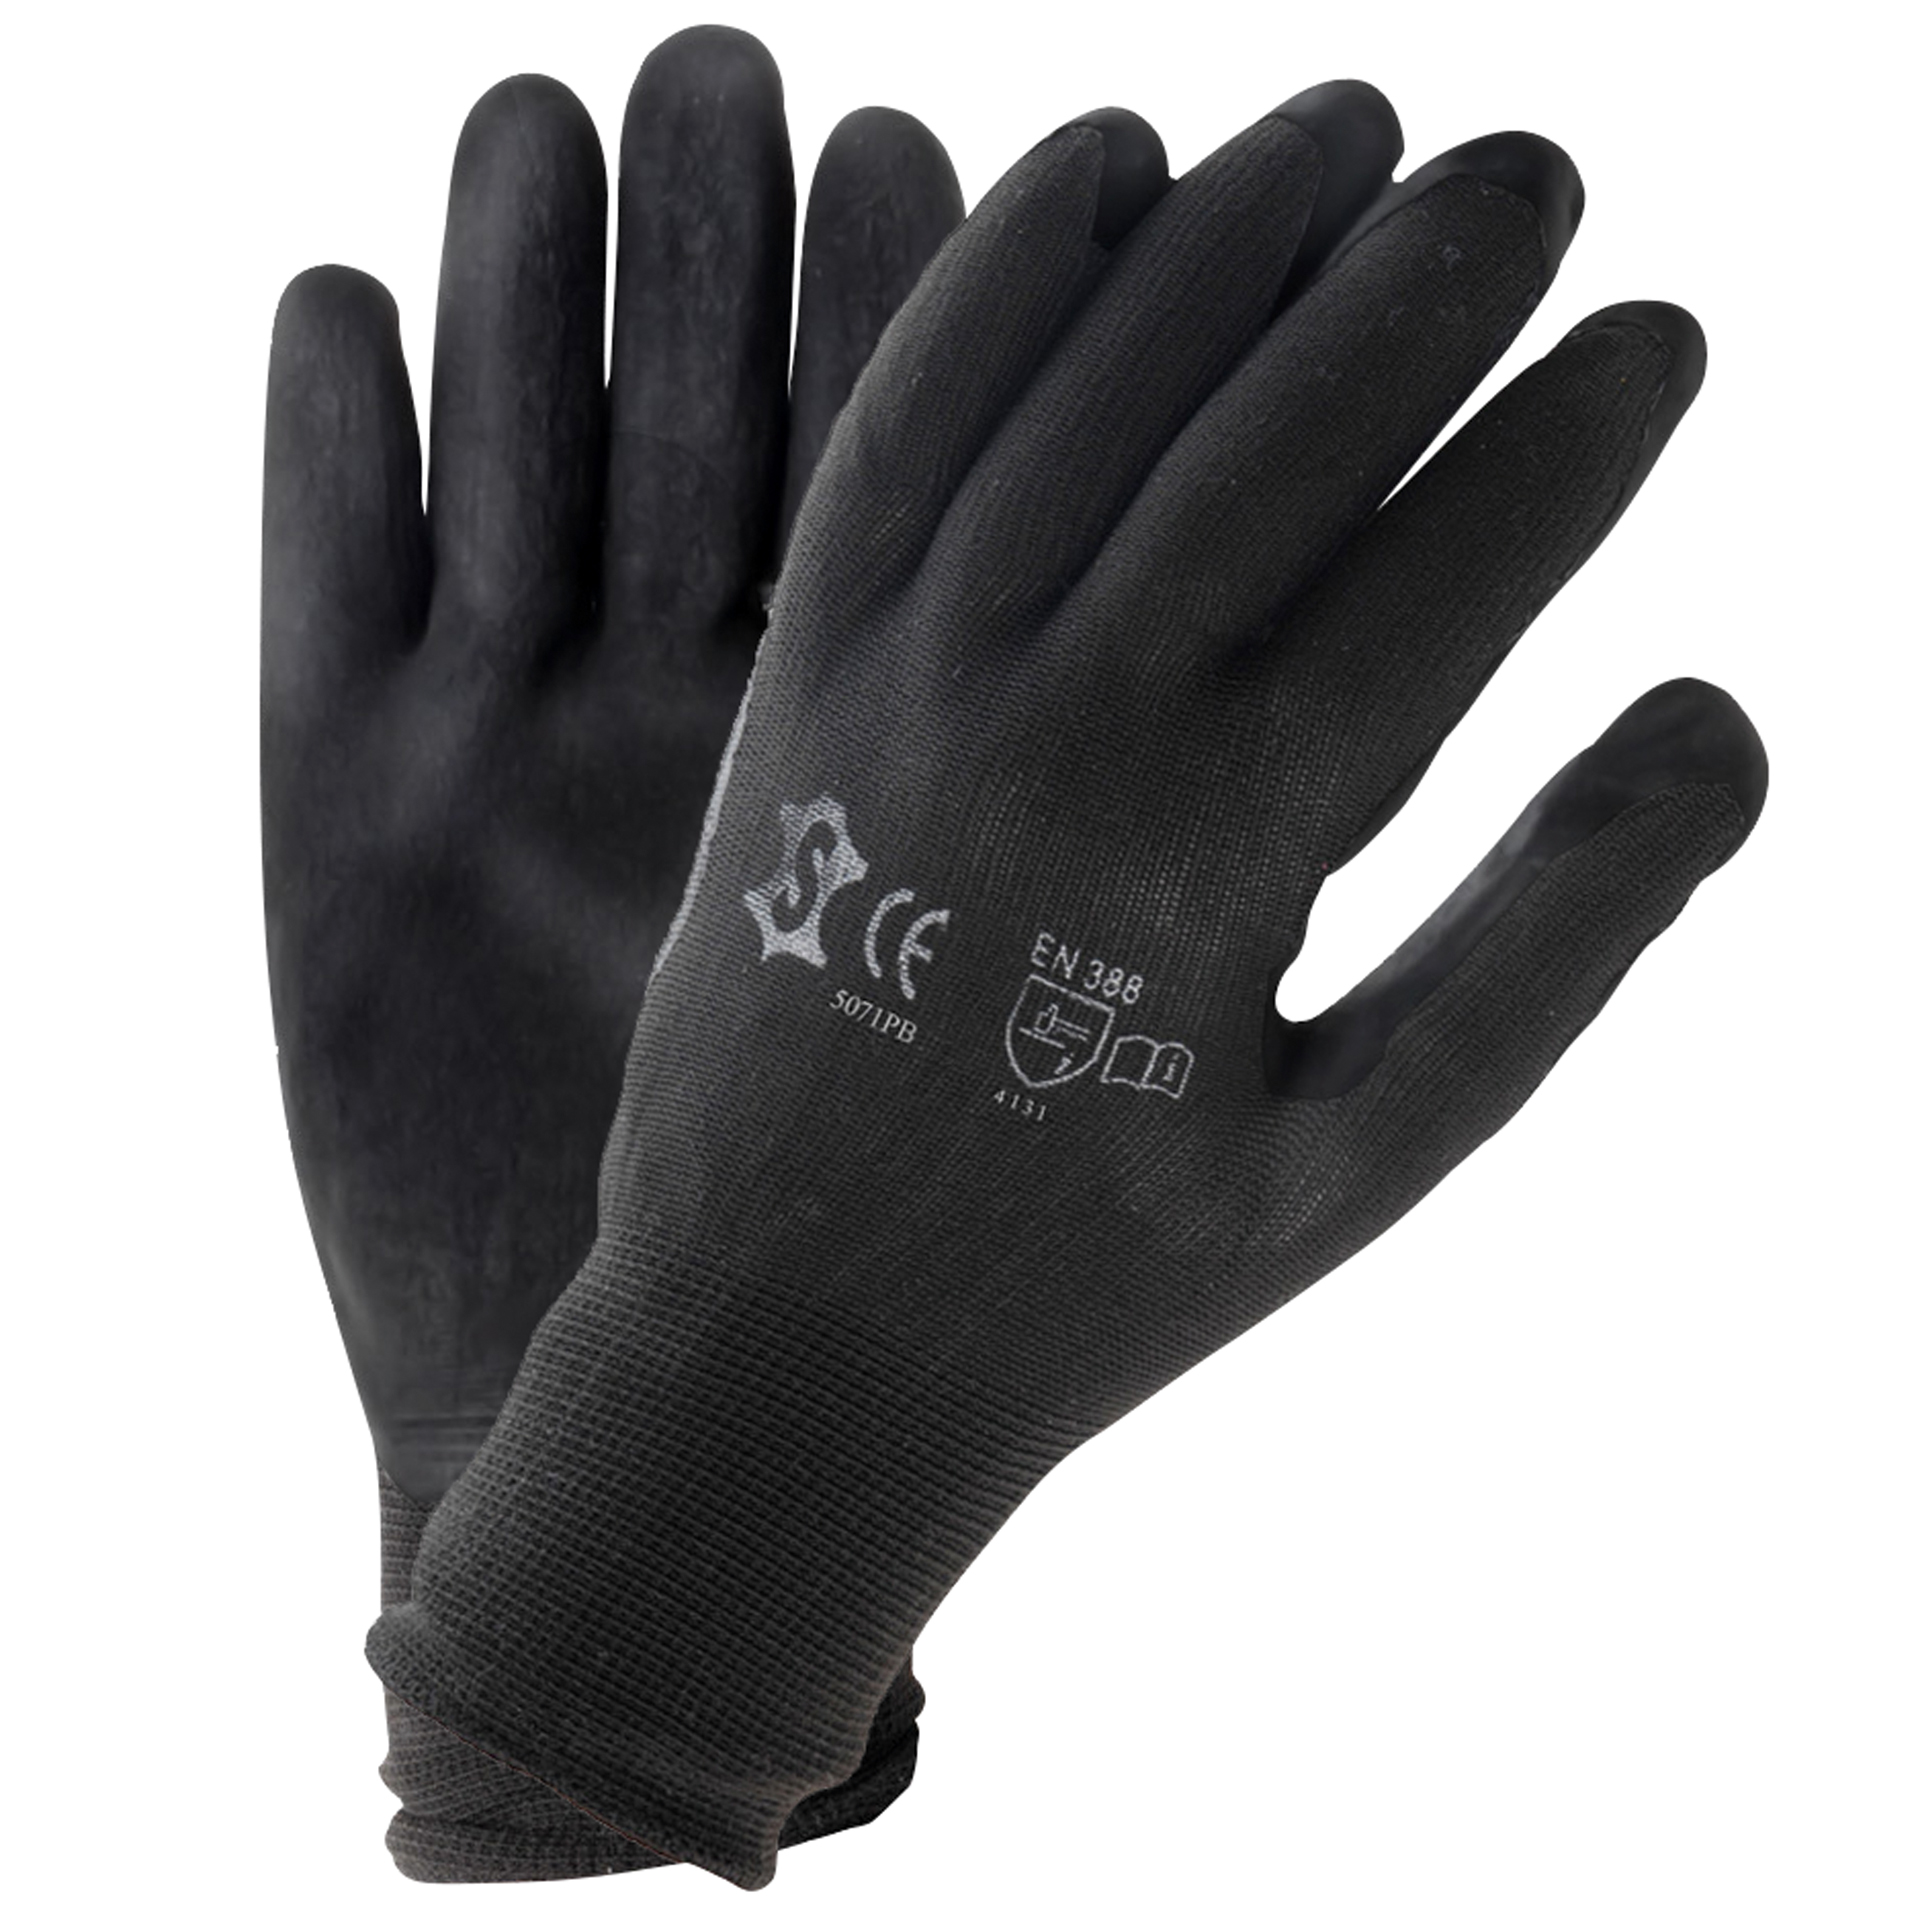 Unbranded Handschoenen PU zwart maat 8 (L) 6172308